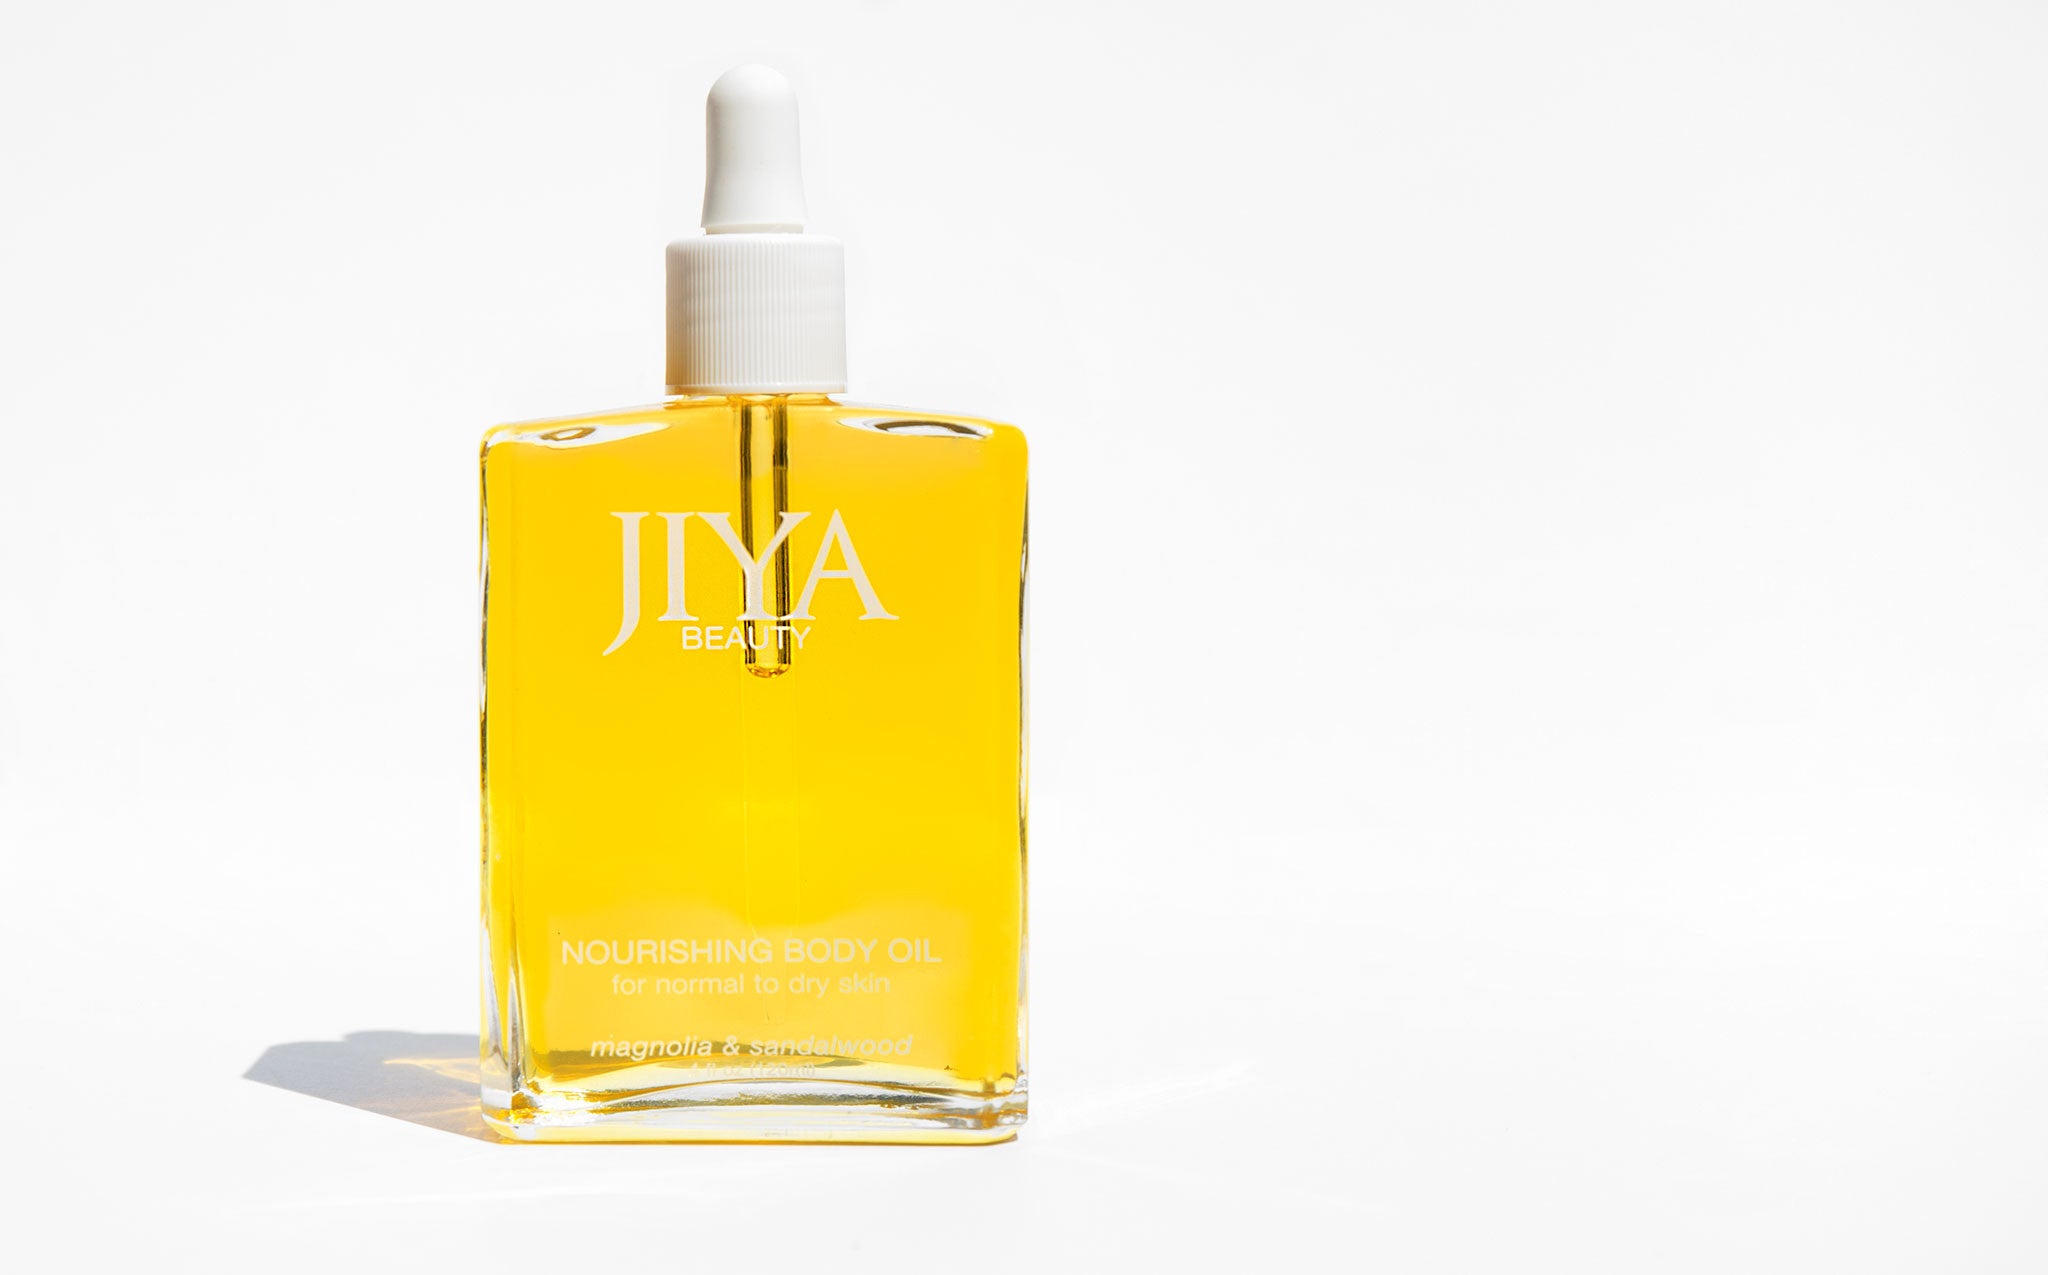 Jiya Beauty Nourishing Body Oil